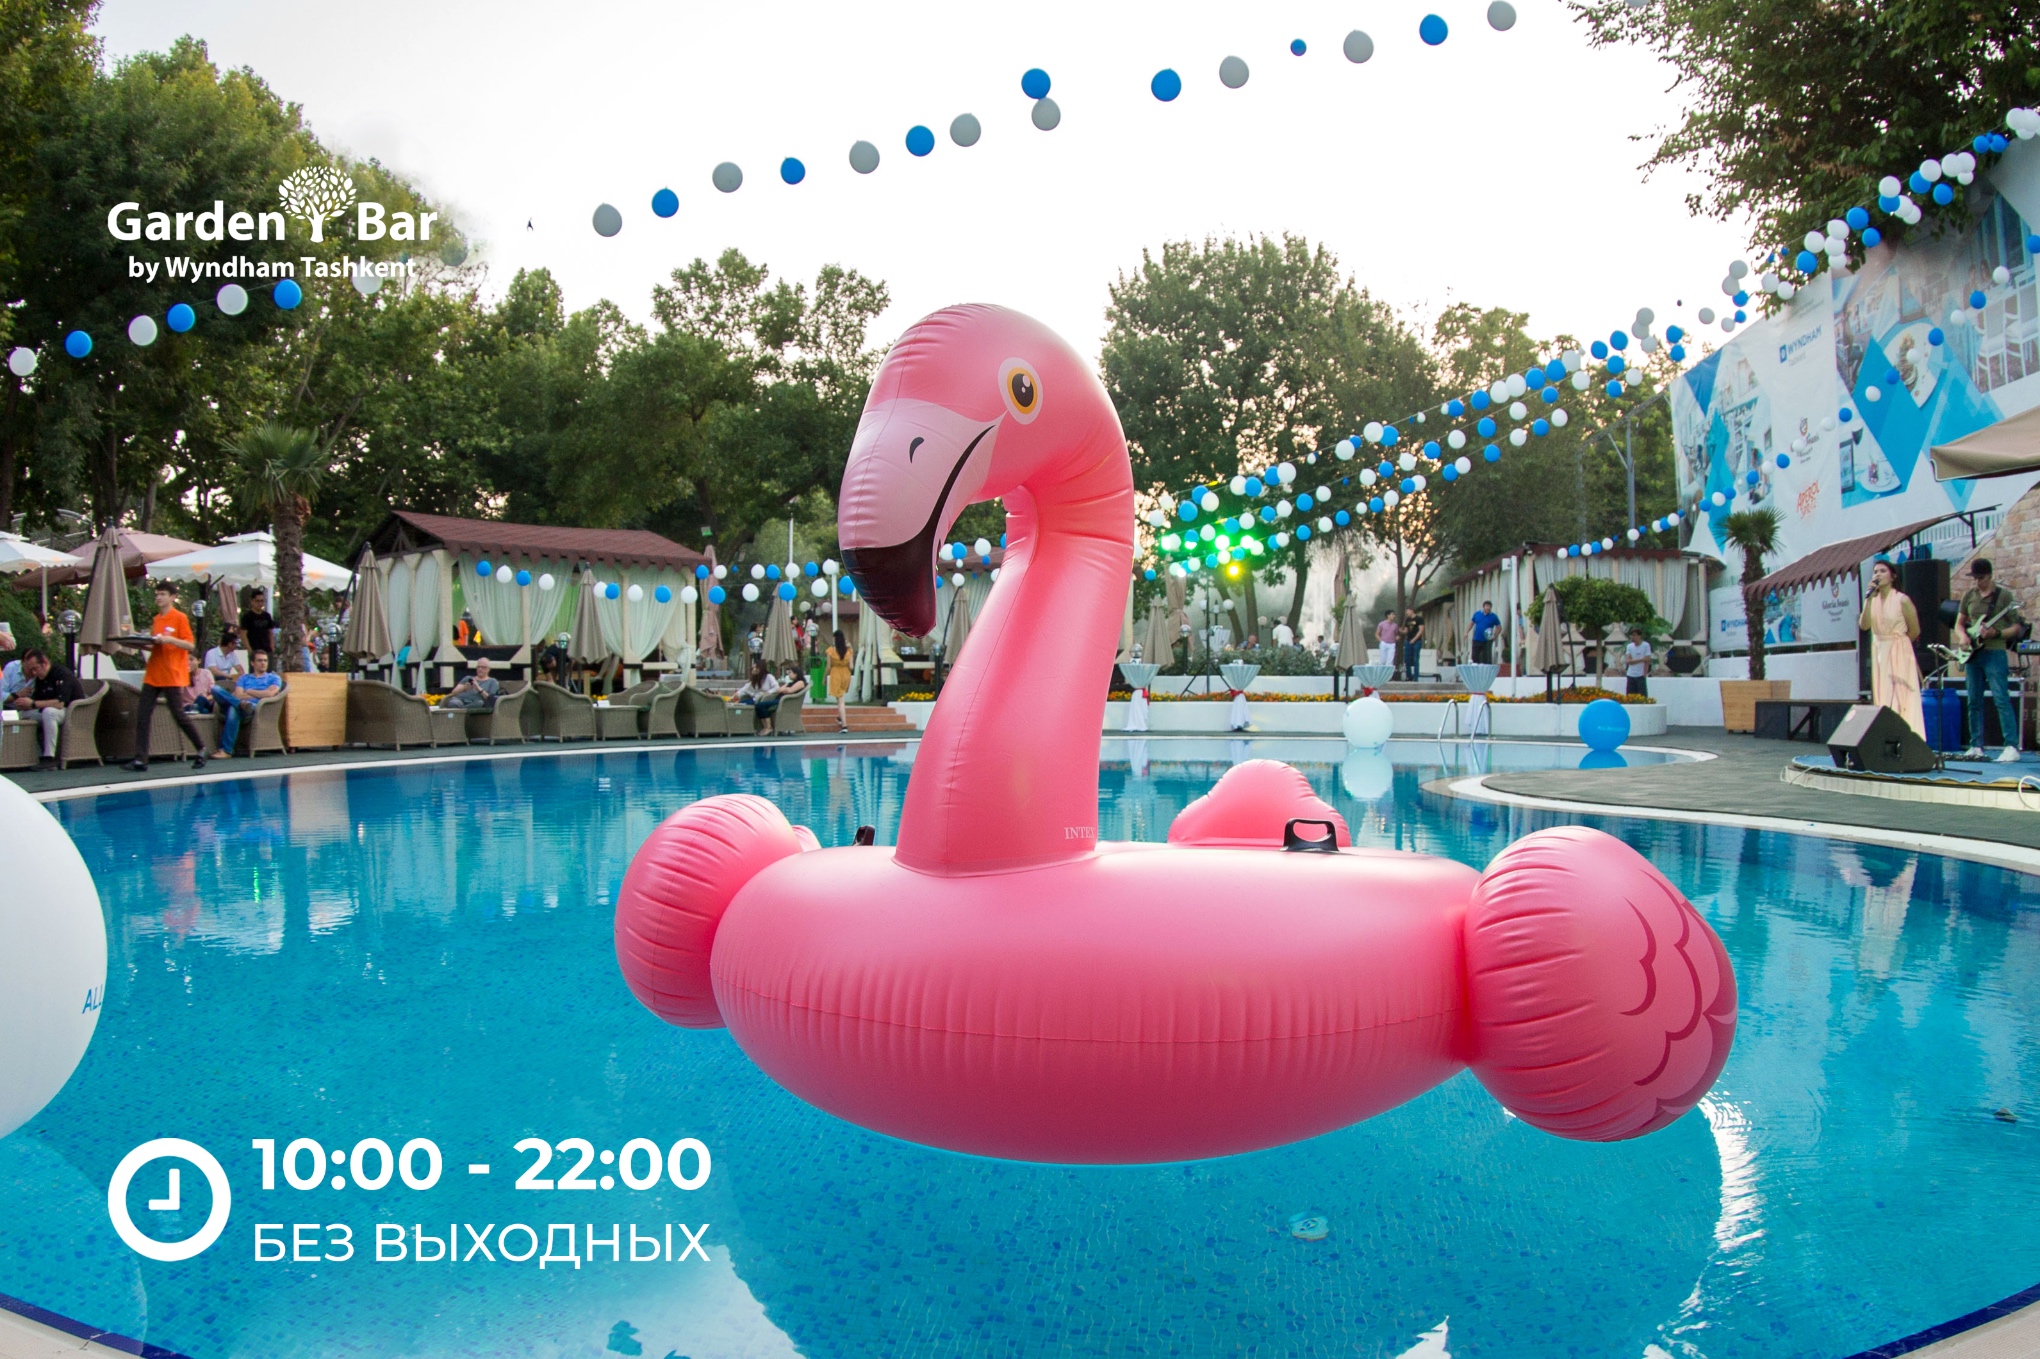 Отель Wyndham Tashkent открывает летний сезон в Garden Bar и приглашает вас насладиться этим летом